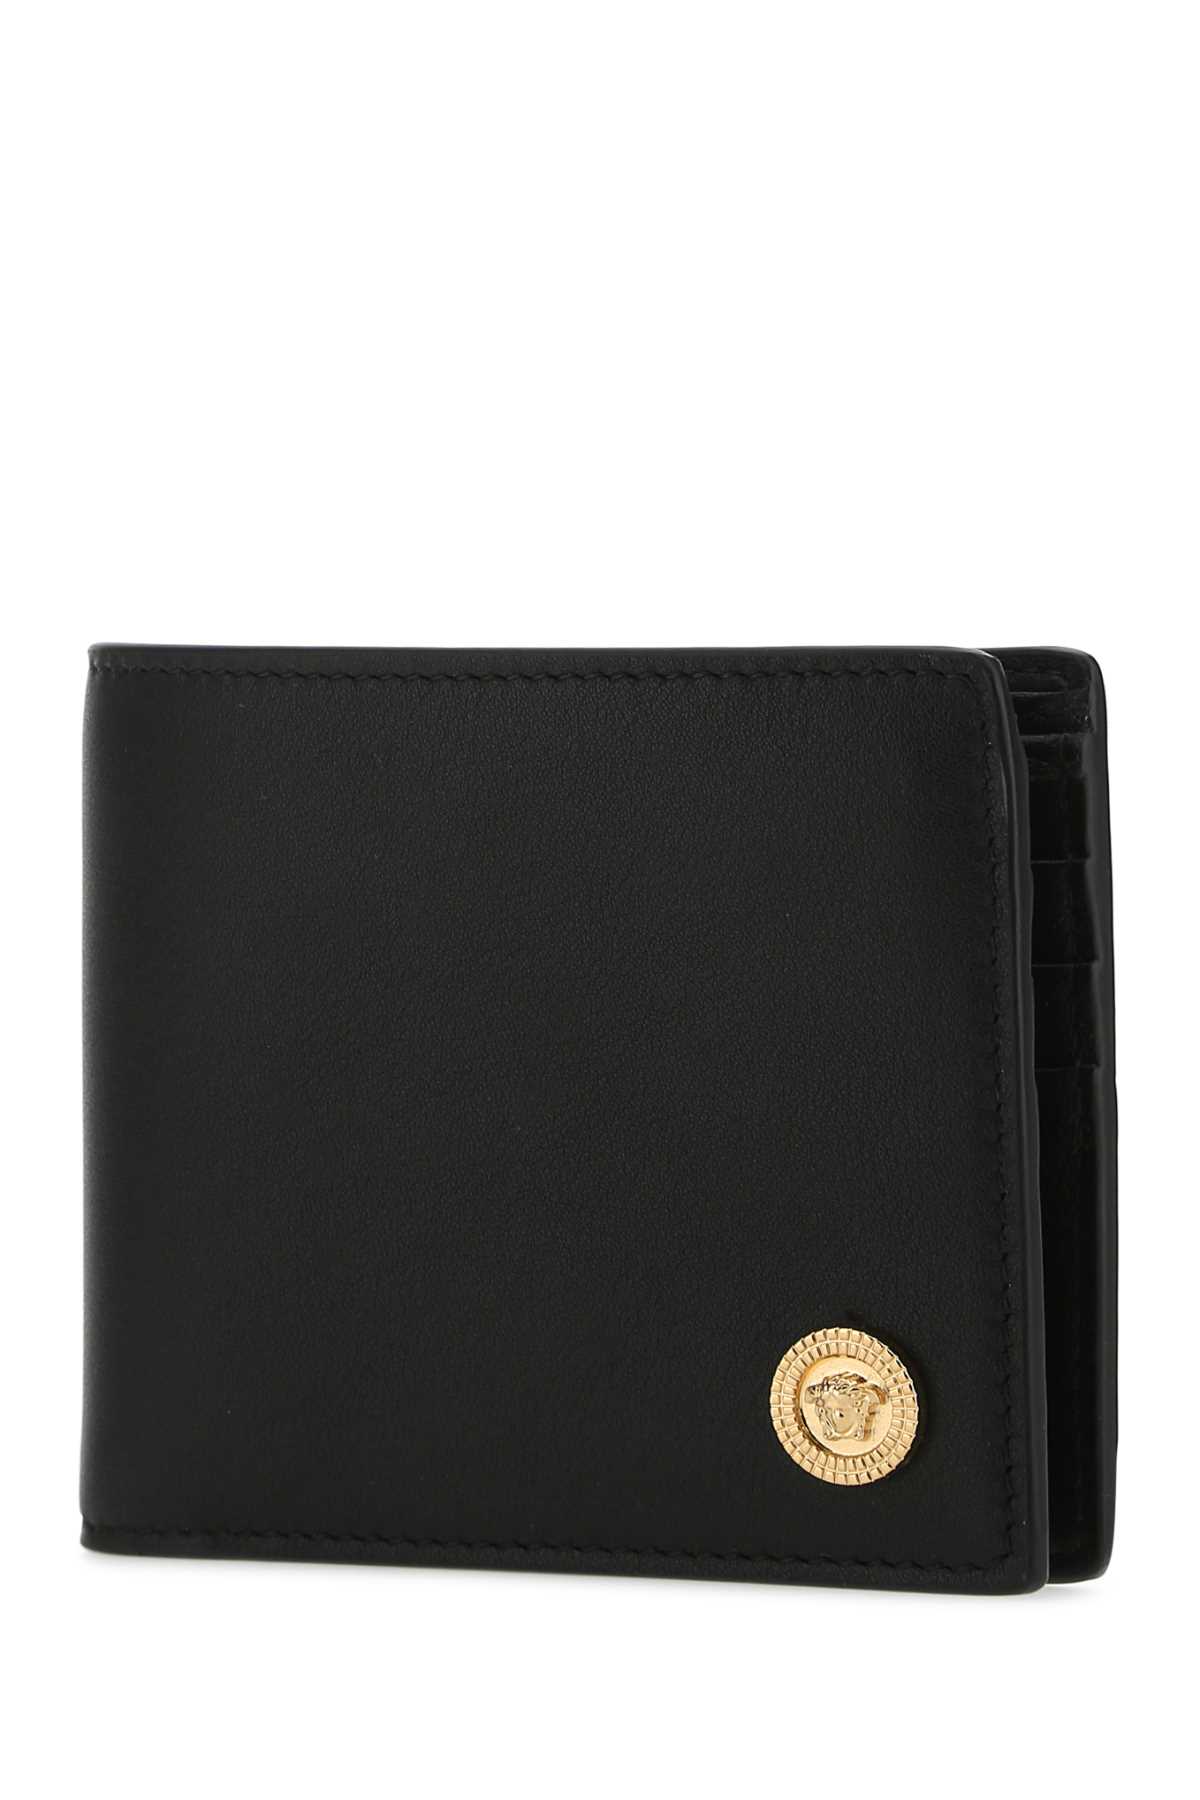 Shop Versace Black Leather Wallet In 1b00v